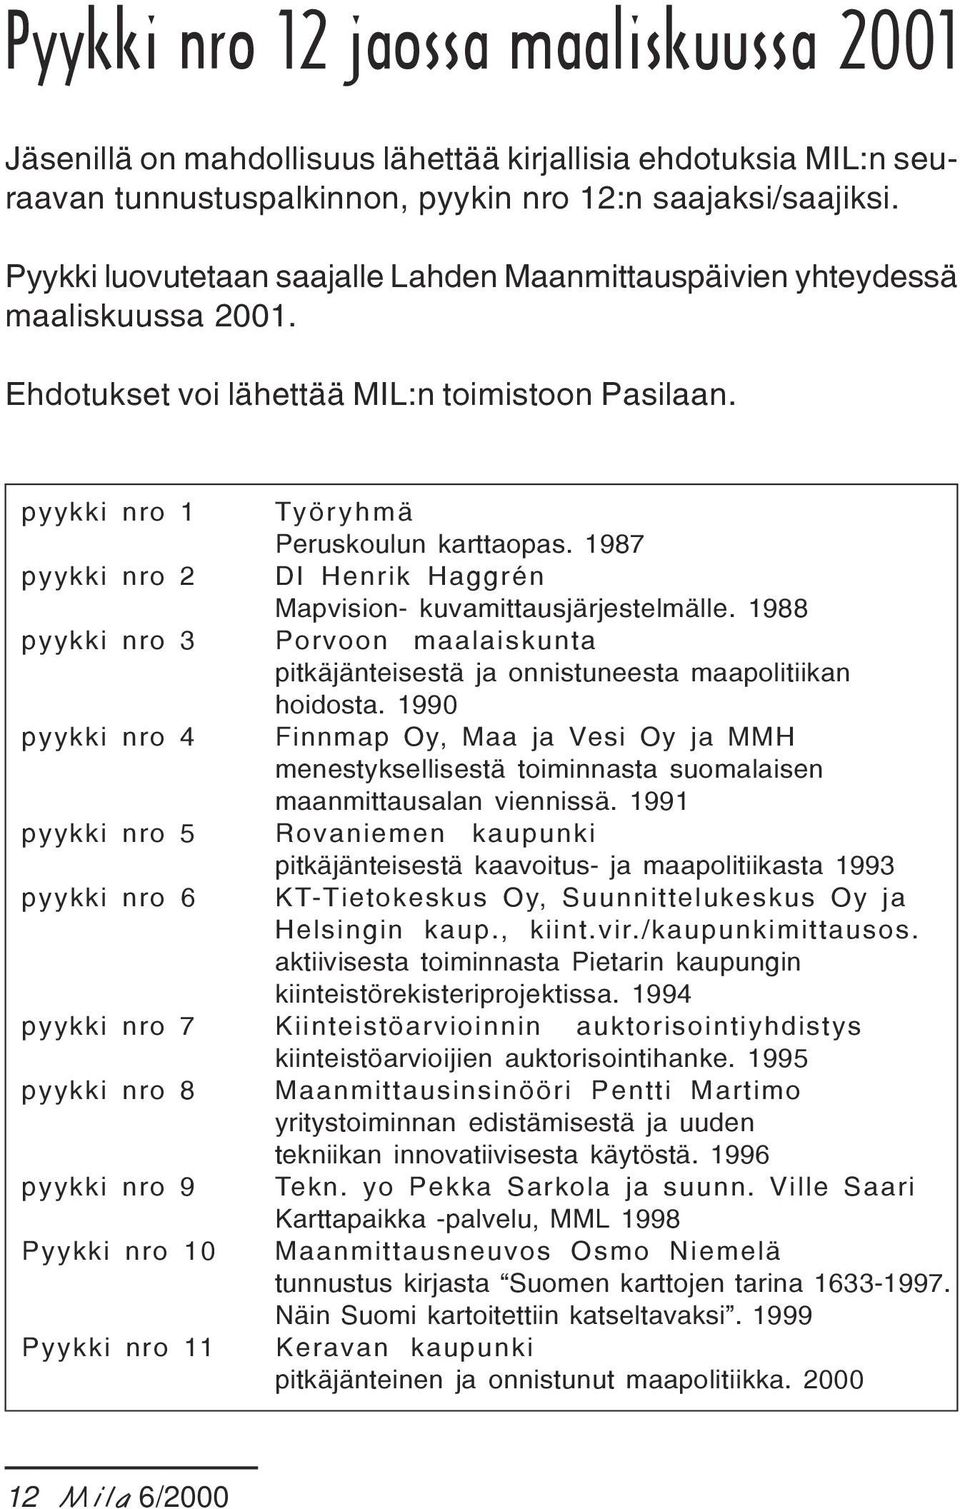 1987 pyykki nro 2 DI Henrik Haggrén Mapvision- kuvamittausjärjestelmälle. 1988 pyykki nro 3 Porvoon maalaiskunta pitkäjänteisestä ja onnistuneesta maapolitiikan hoidosta.